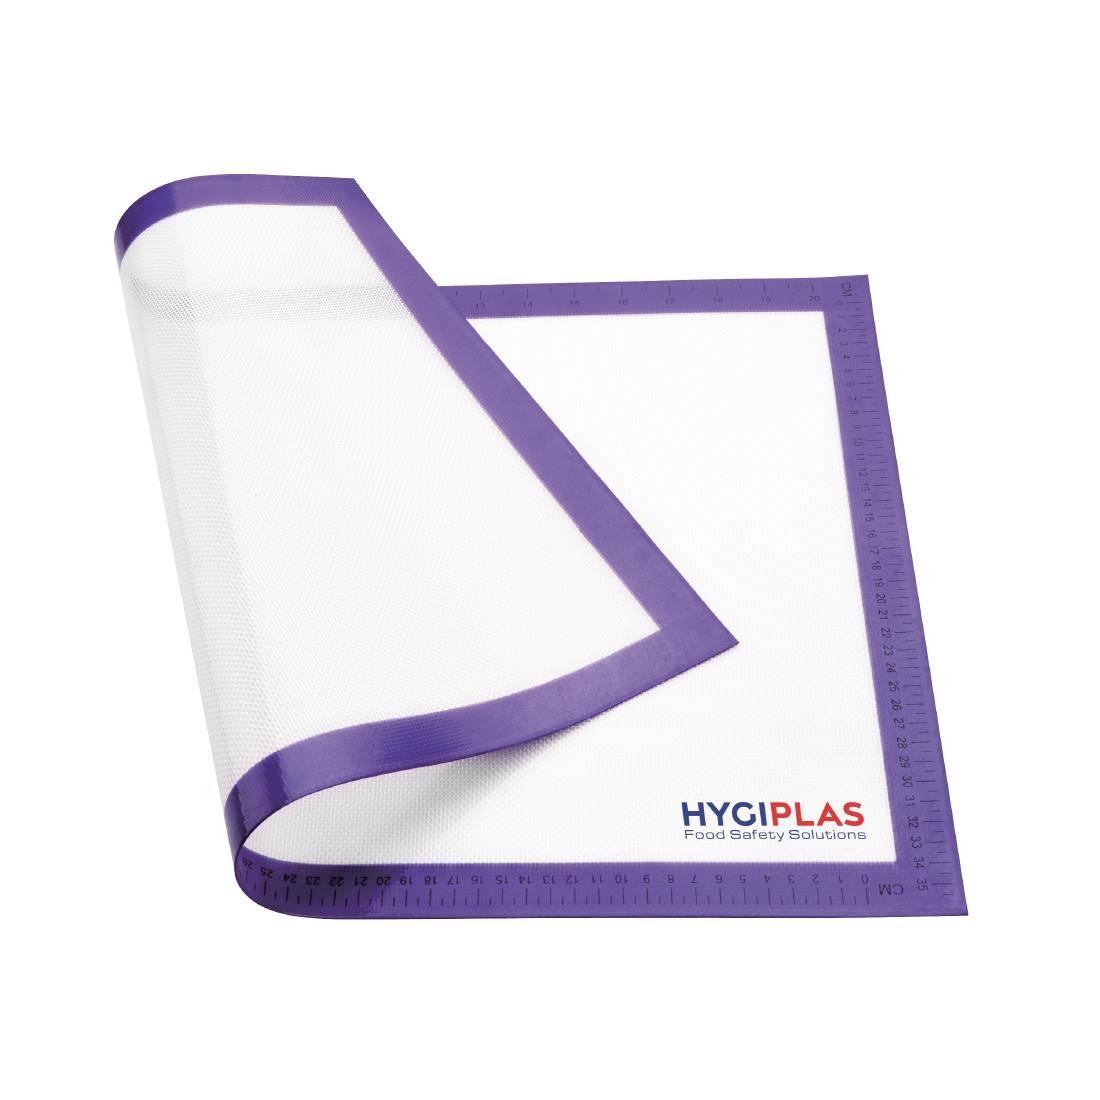 Hygiplas Allergens Non-Stick Baking Mat 585x385mm (23x15.2") - FB609  - 5